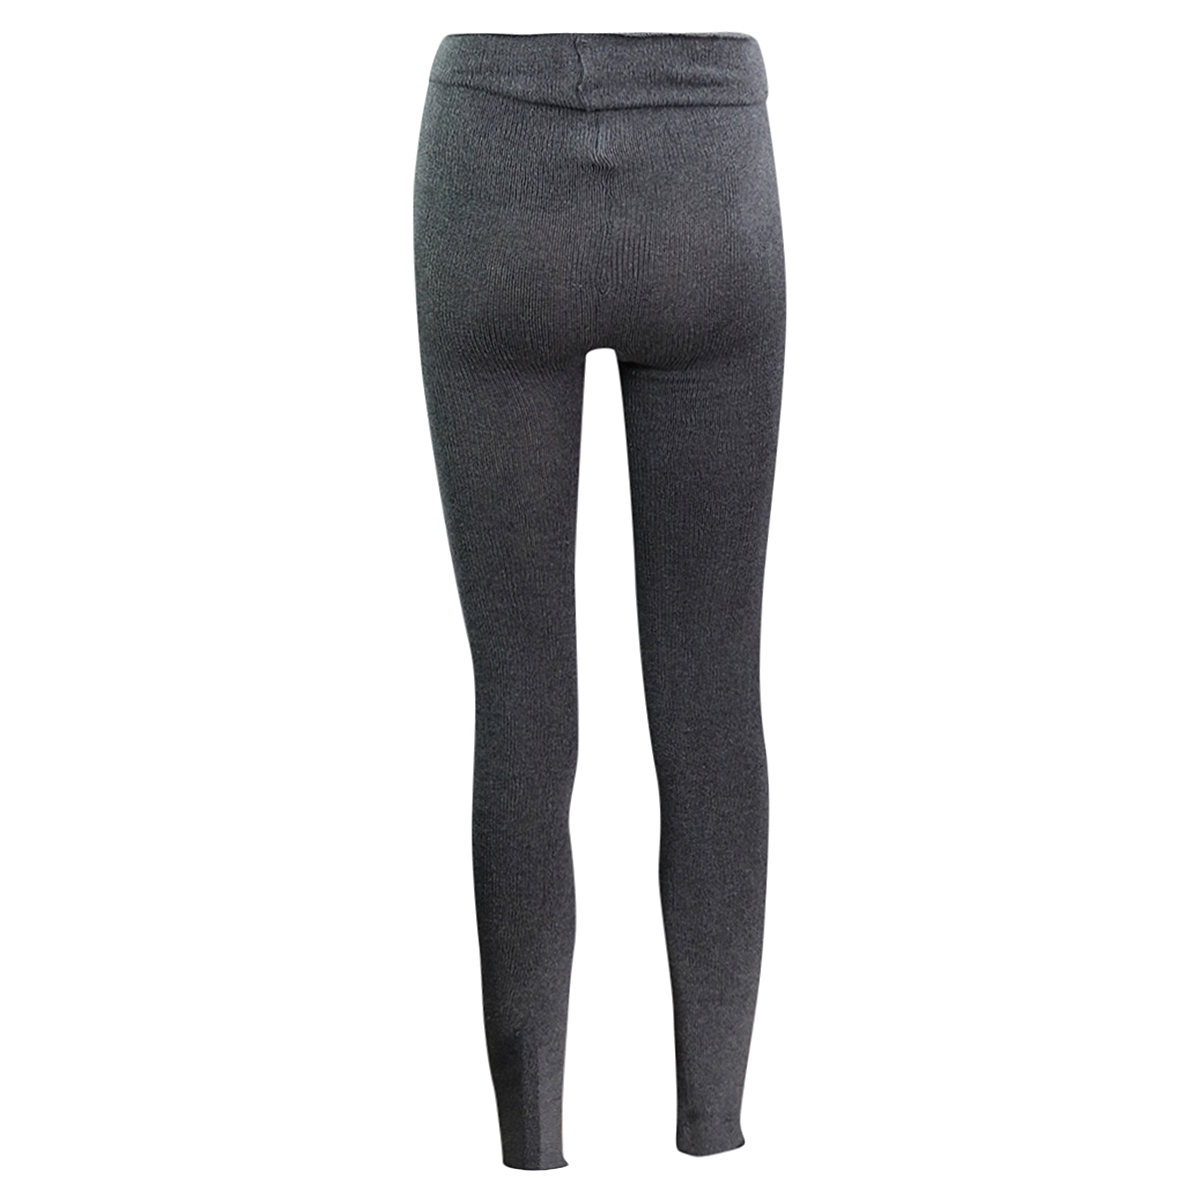 Intermezzo - Ladies Warm-up pants/Practice pants long 5034 Pansur